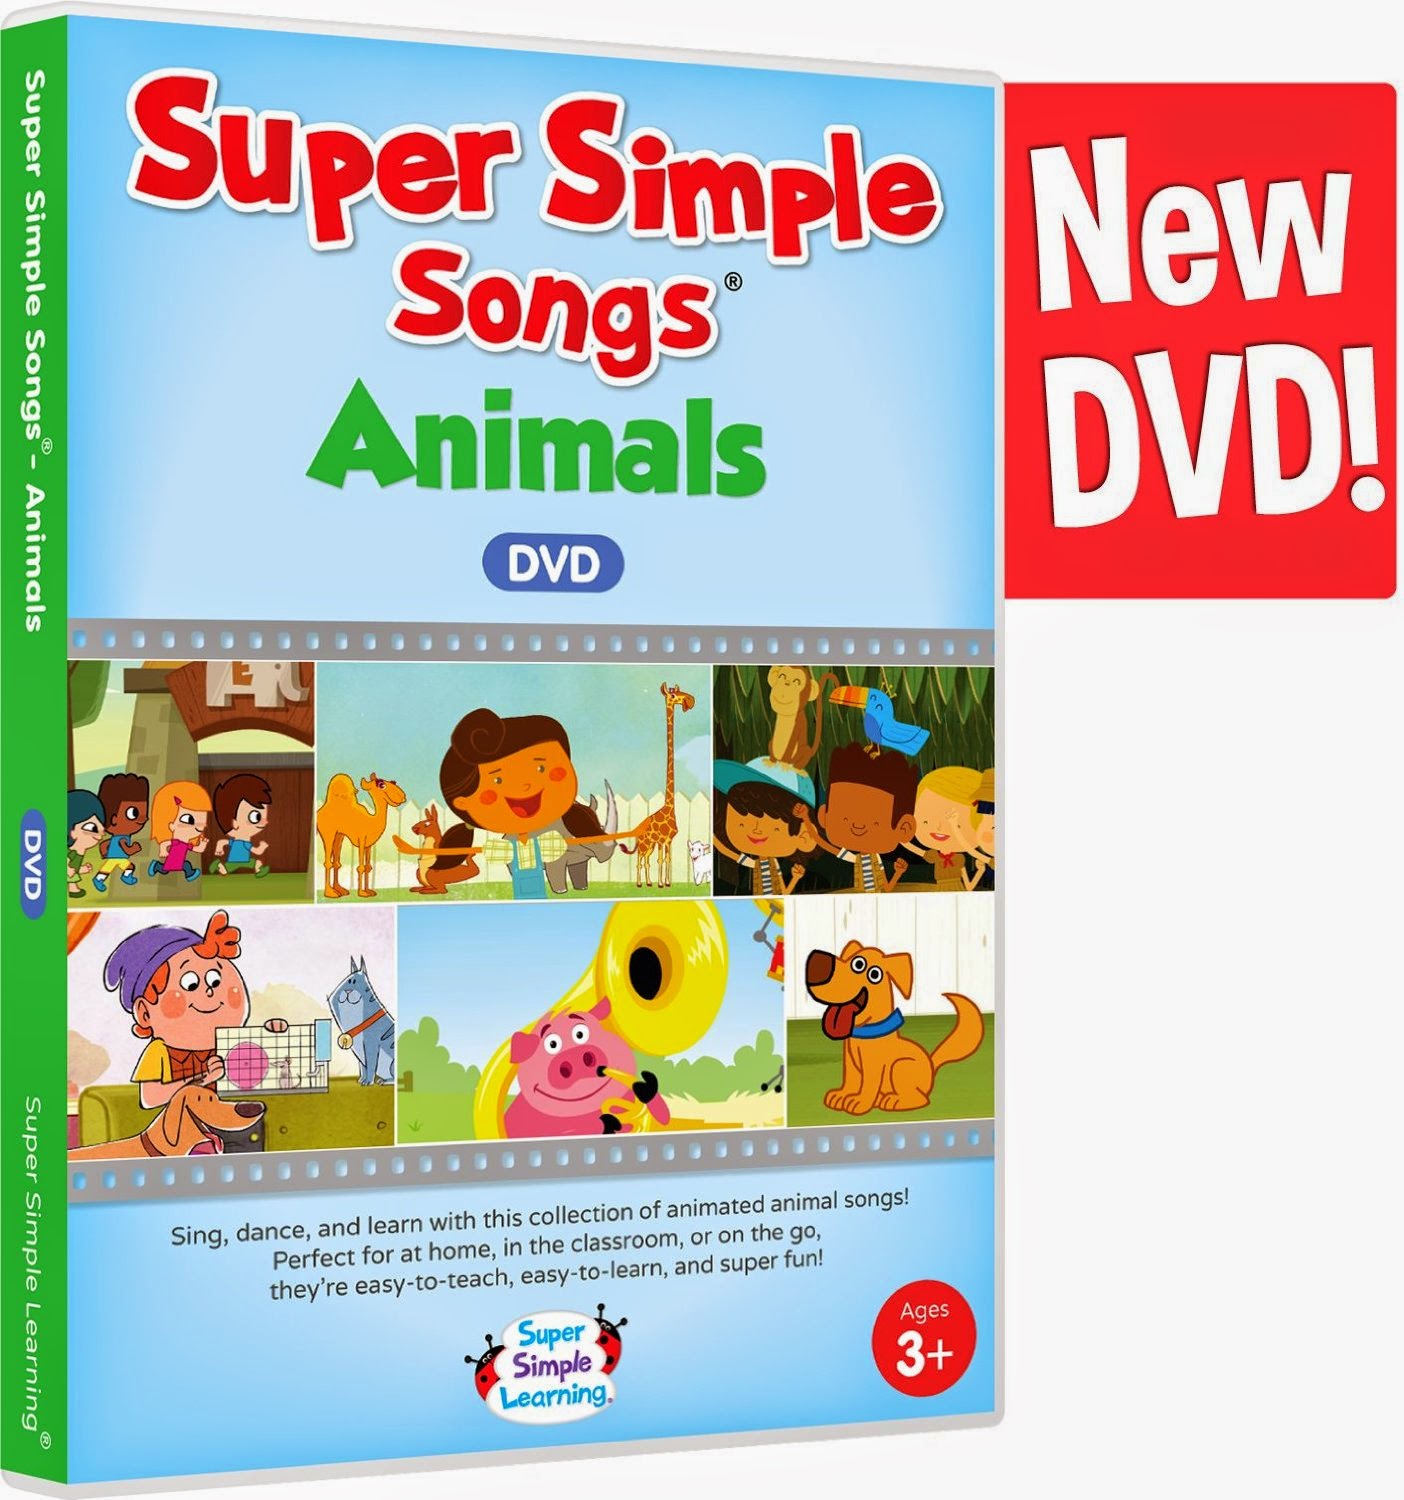 Super simple songs baby. Супер Симпл Сонг. Super simple Songs. Super simple Songs animals. Simple Learning Songs.